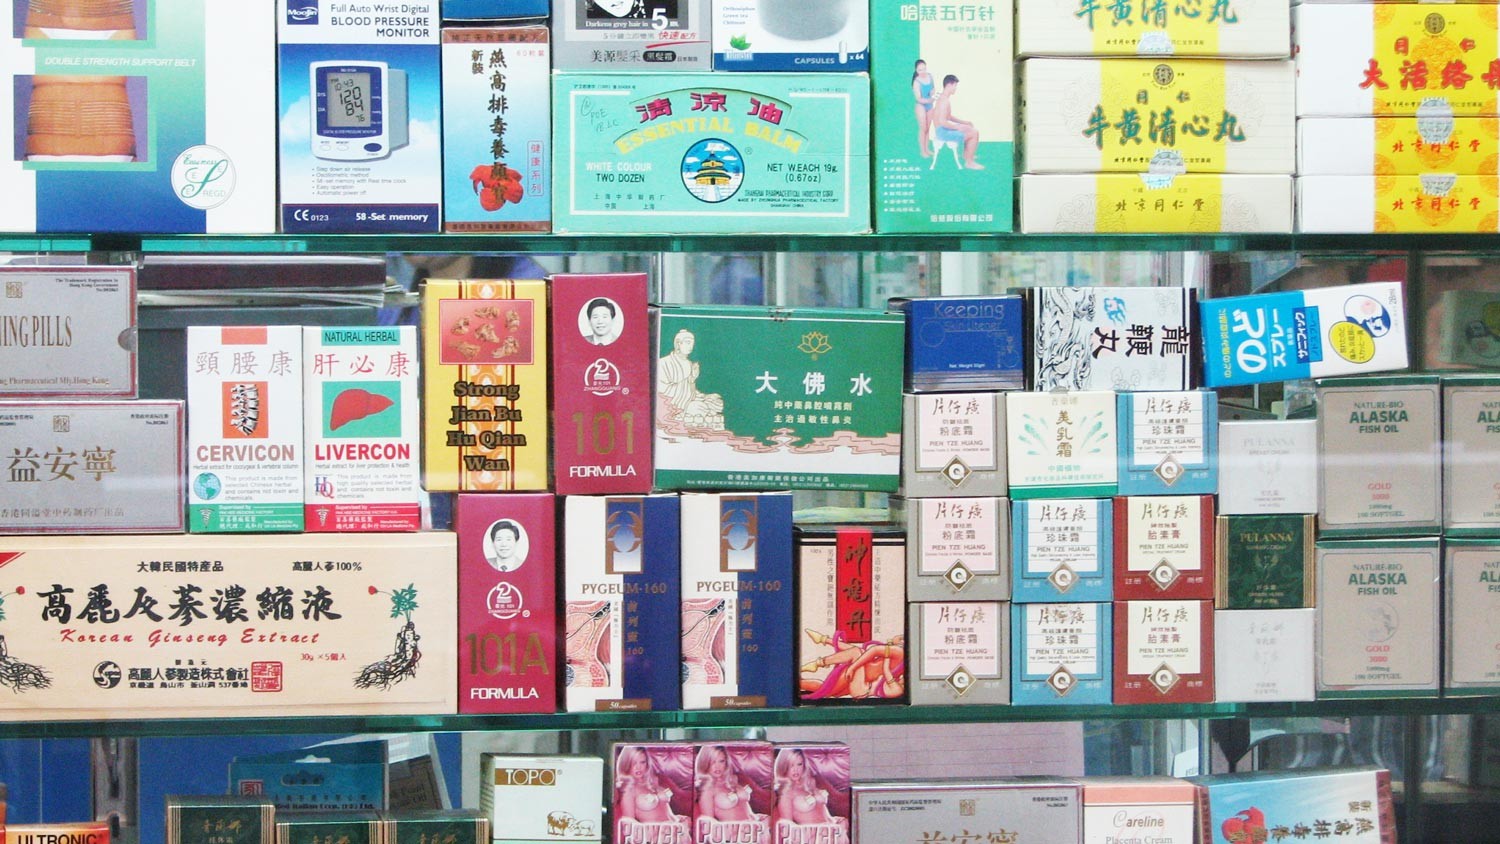 Китайская аптека интернет. Китайские лекарства. Популярные китайские лекарства. Китайские препараты для здоровья. Китайская мазь.